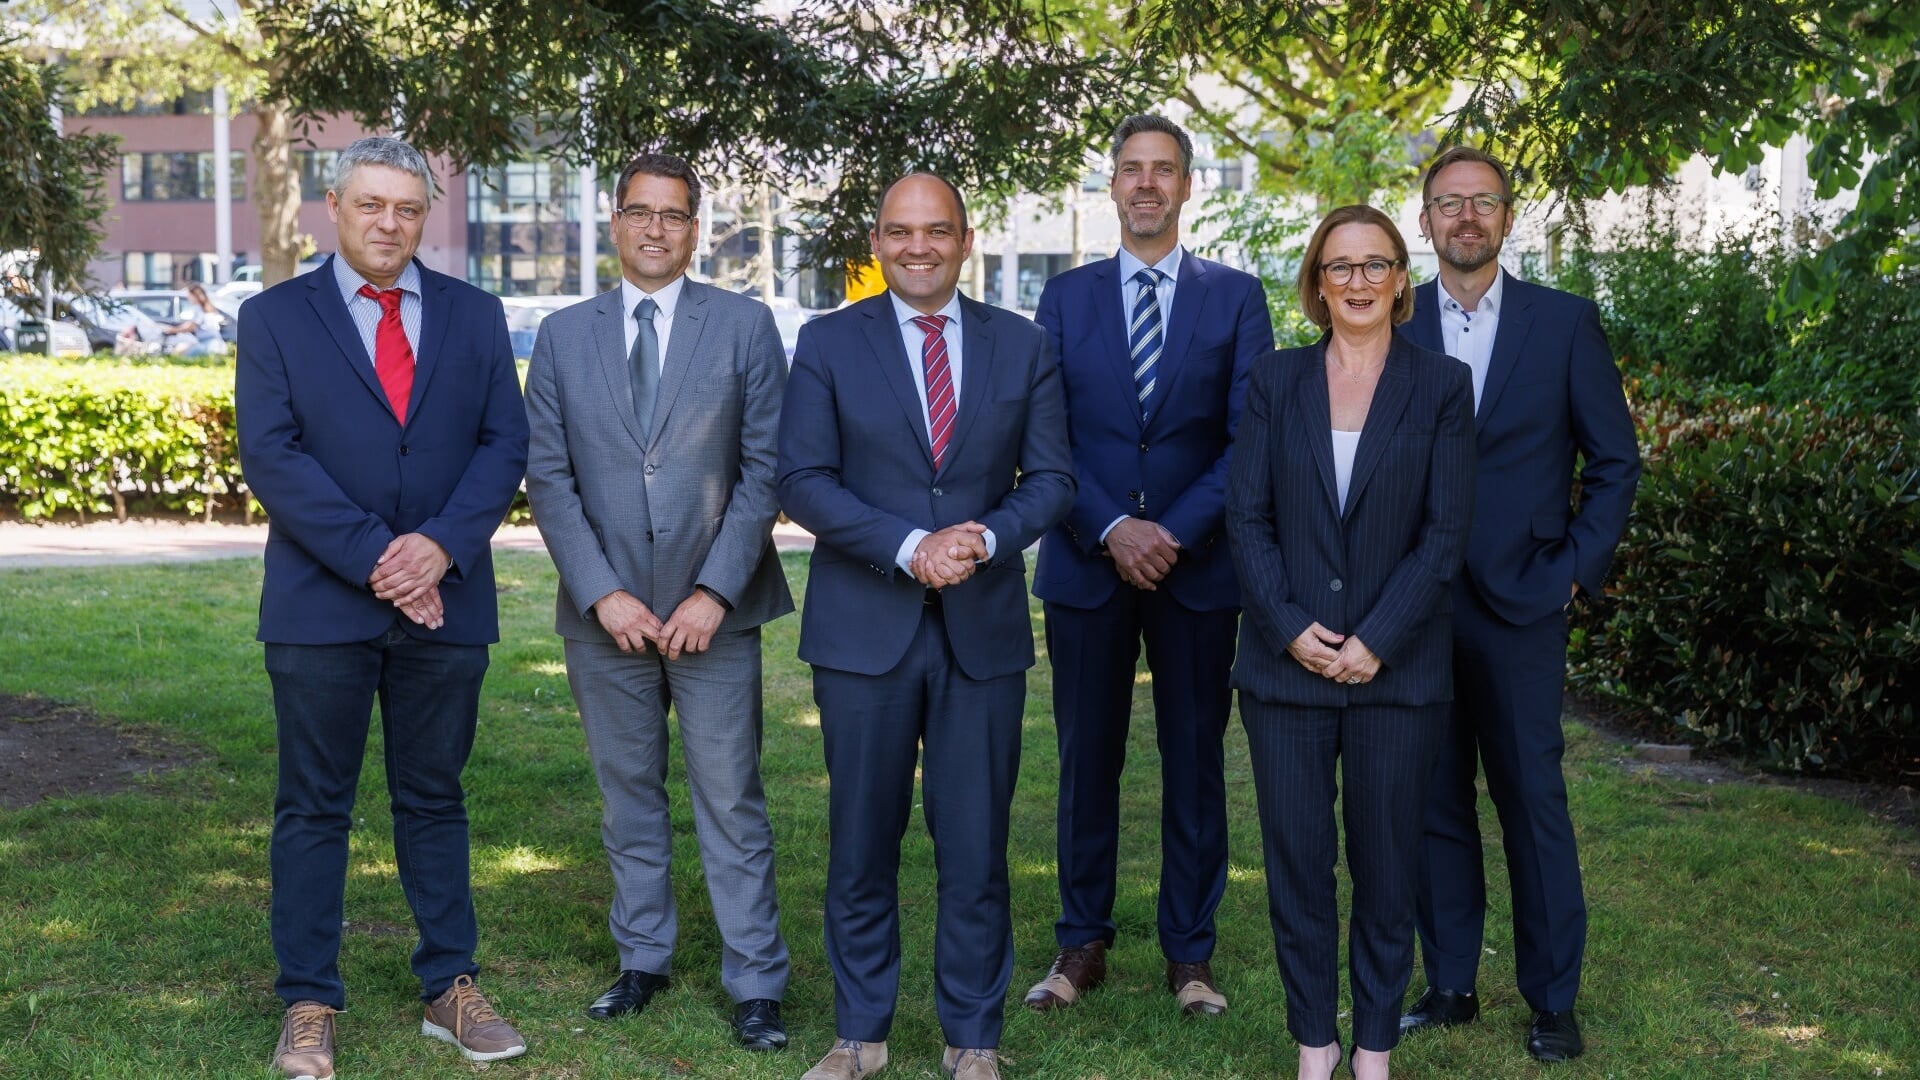 Op de foto van links naar rechts: Bennie Blom, Jack
van Dorst, Danny Dingemans, Aart-Jan Moerkerke (burgemeester), Pauline Joosten en Hans
Slagboom (gemeentesecretaris).